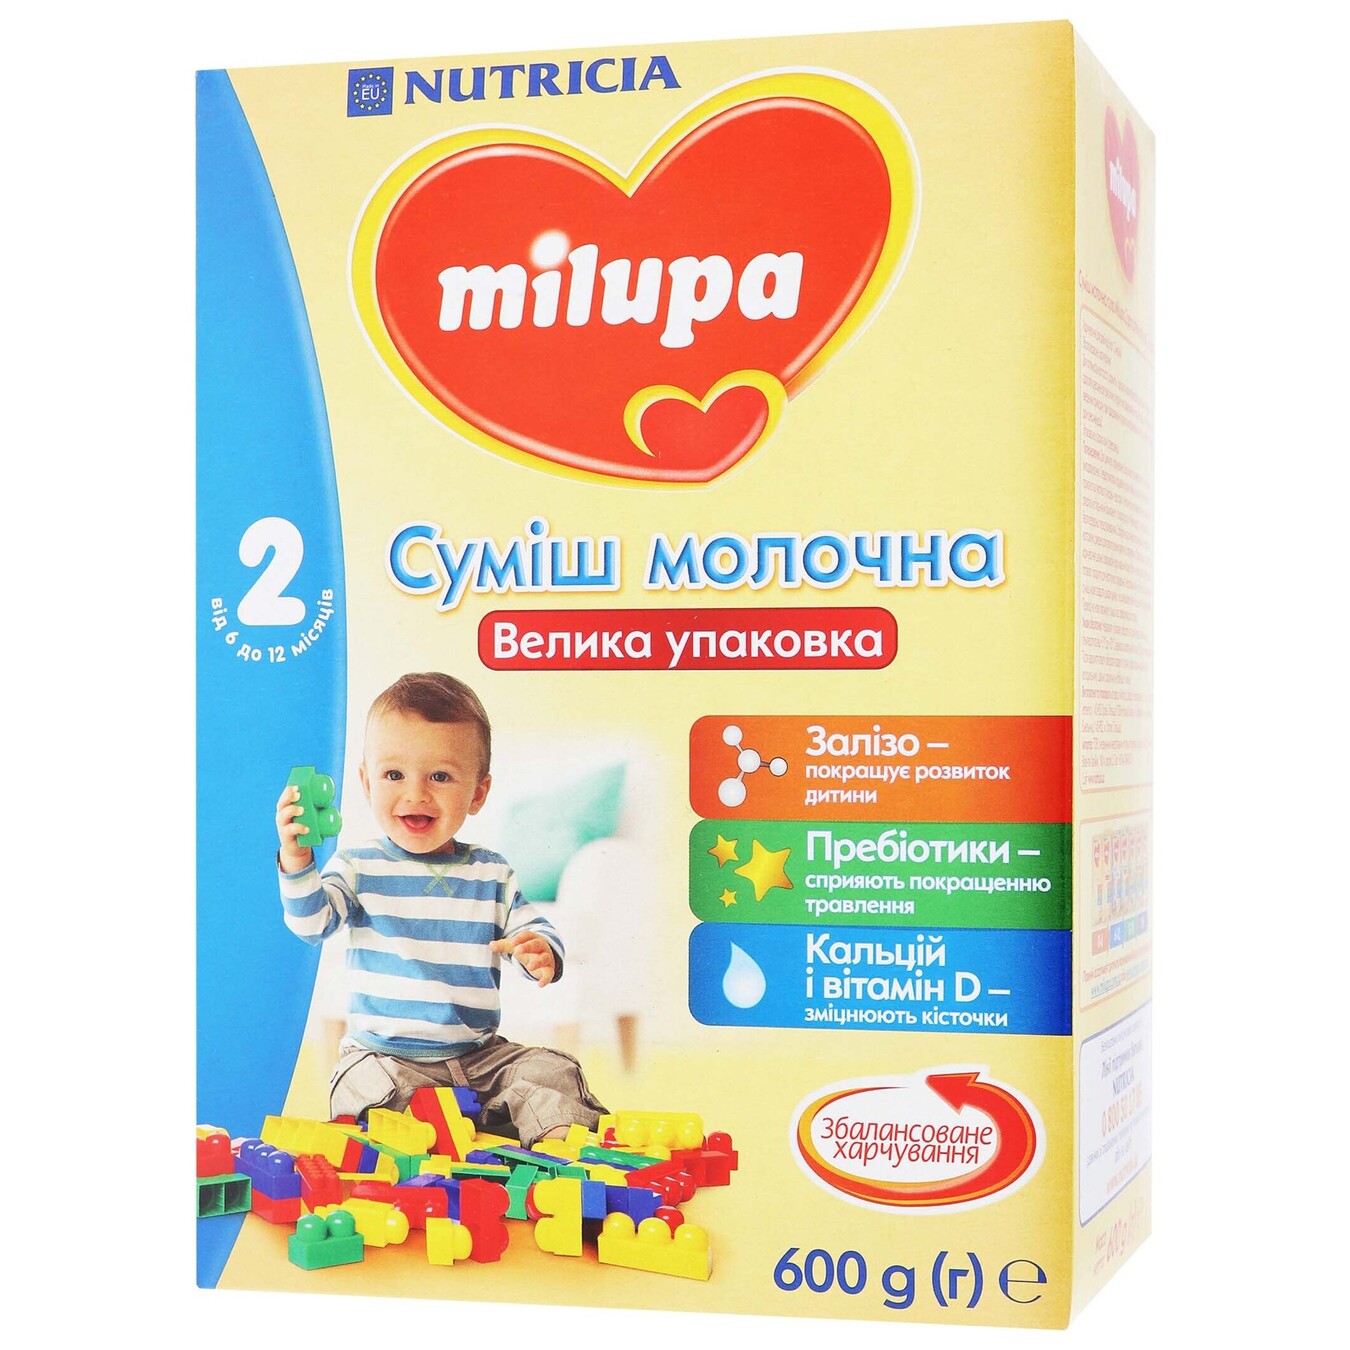 Mix Milupa 2 Molochnaya Sukhaya 600g 2